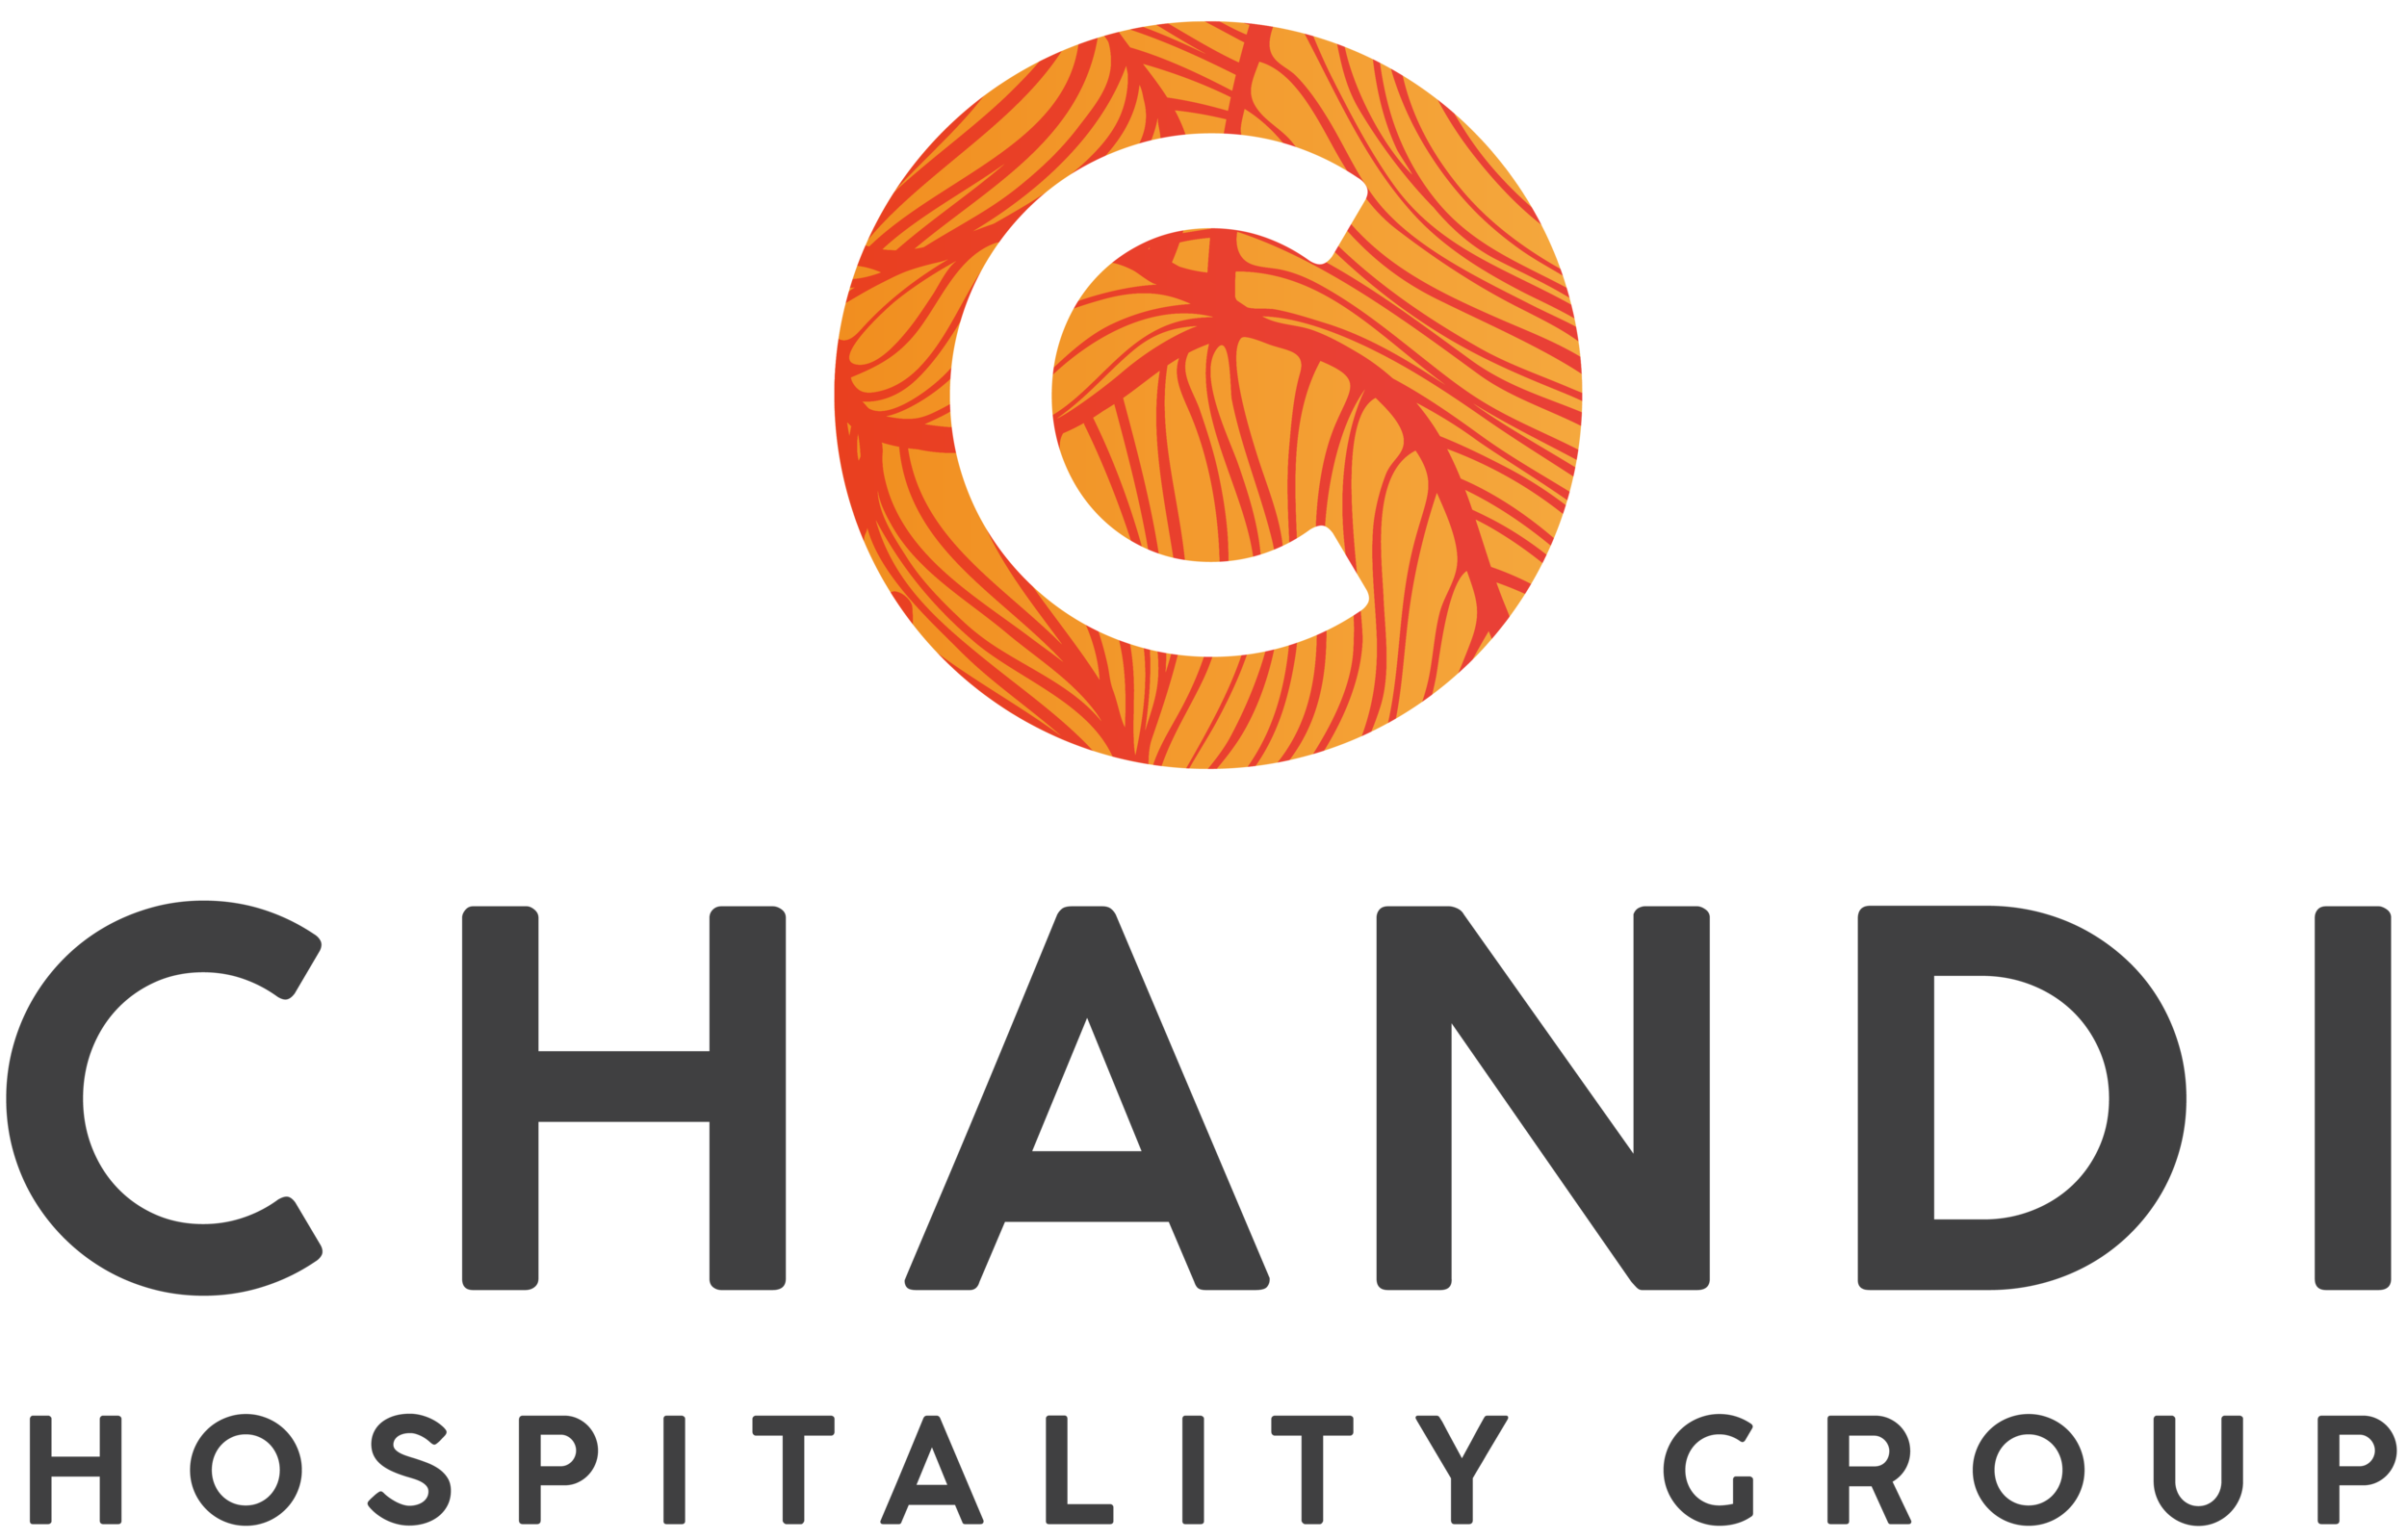 Chandi Hospitality Group